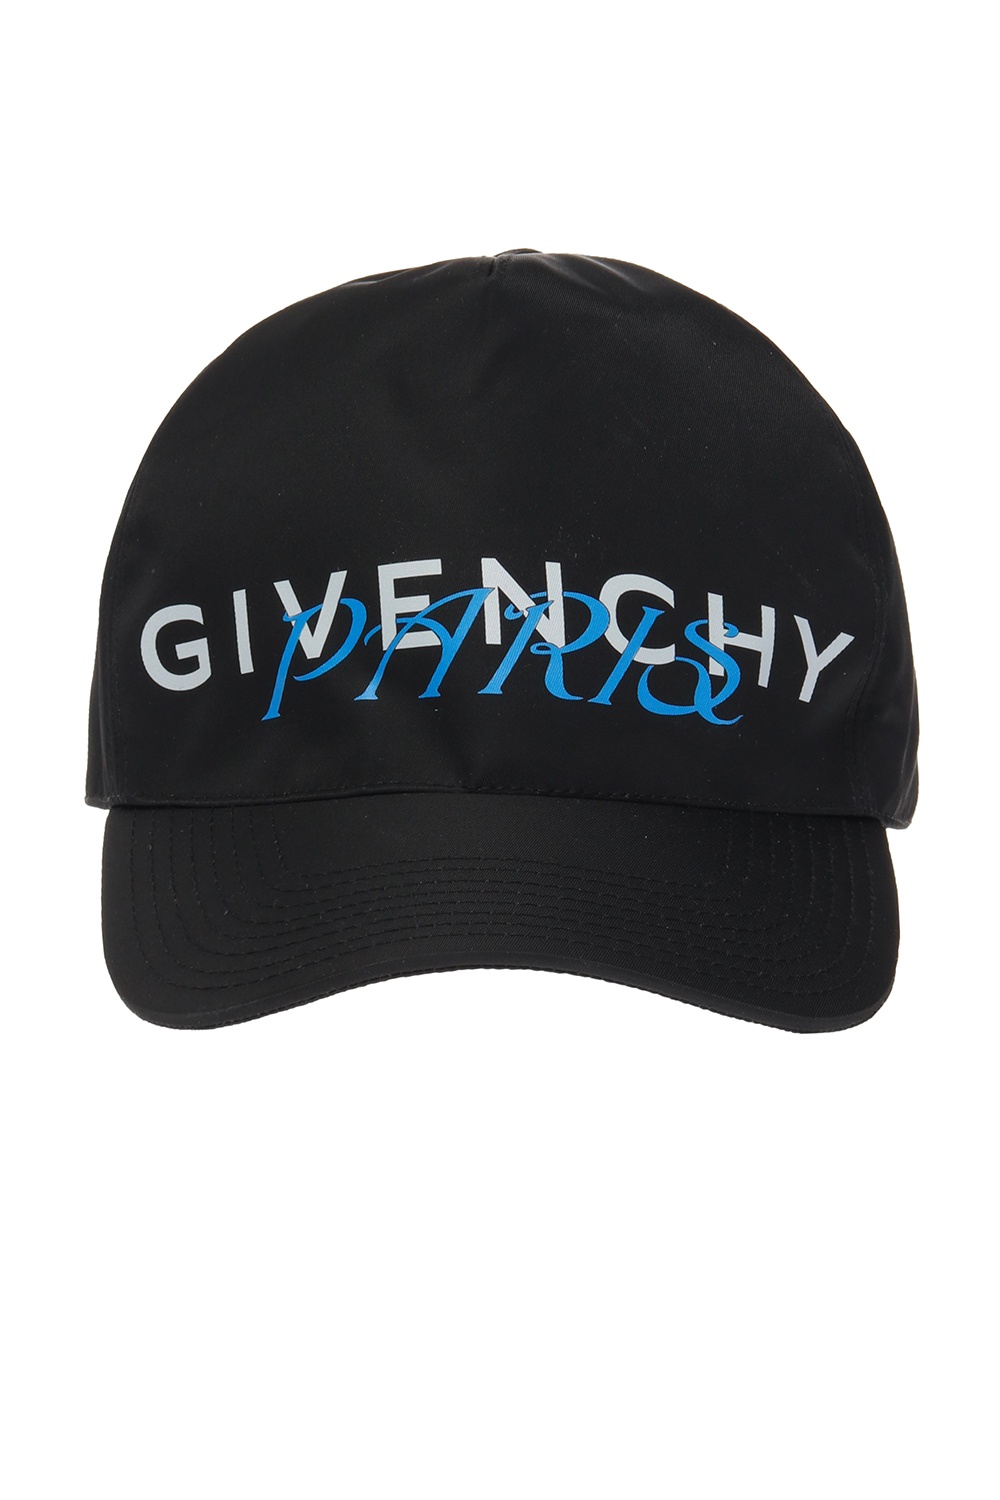 givenchy baseball cap